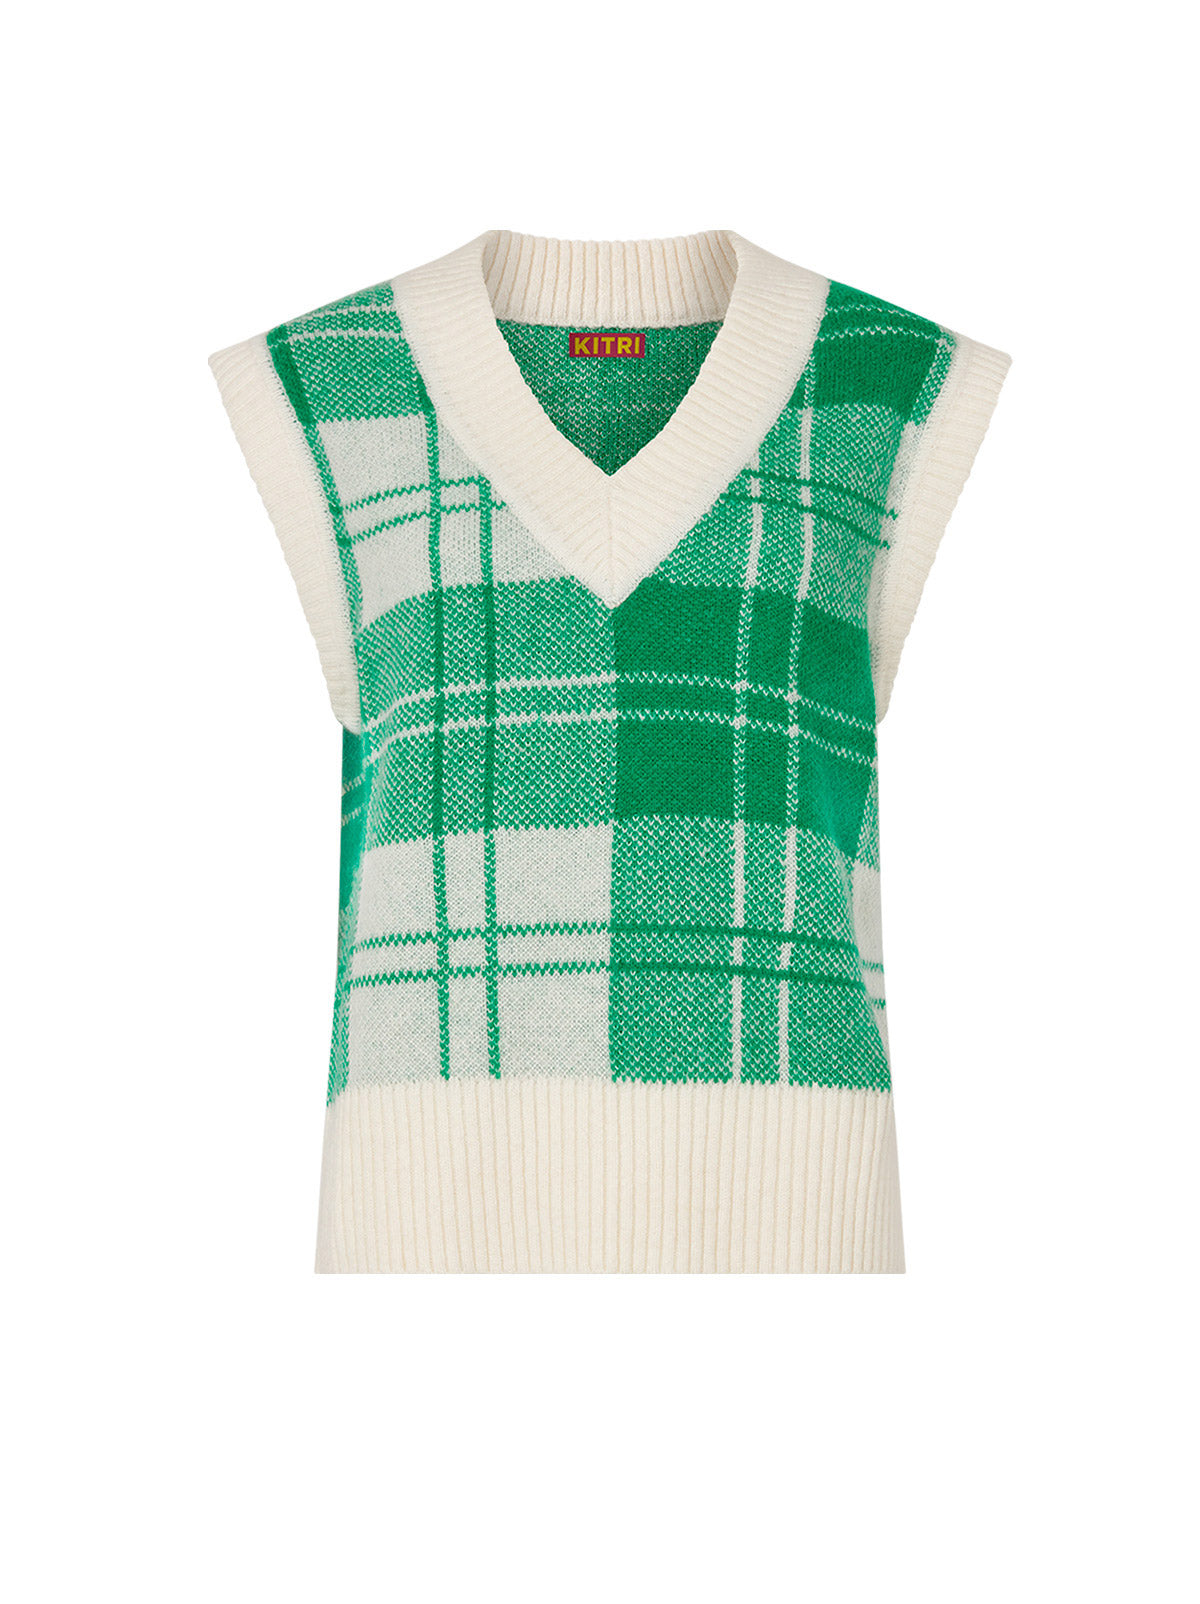 Meadow Green Check Knit Vest | KITRI Studio